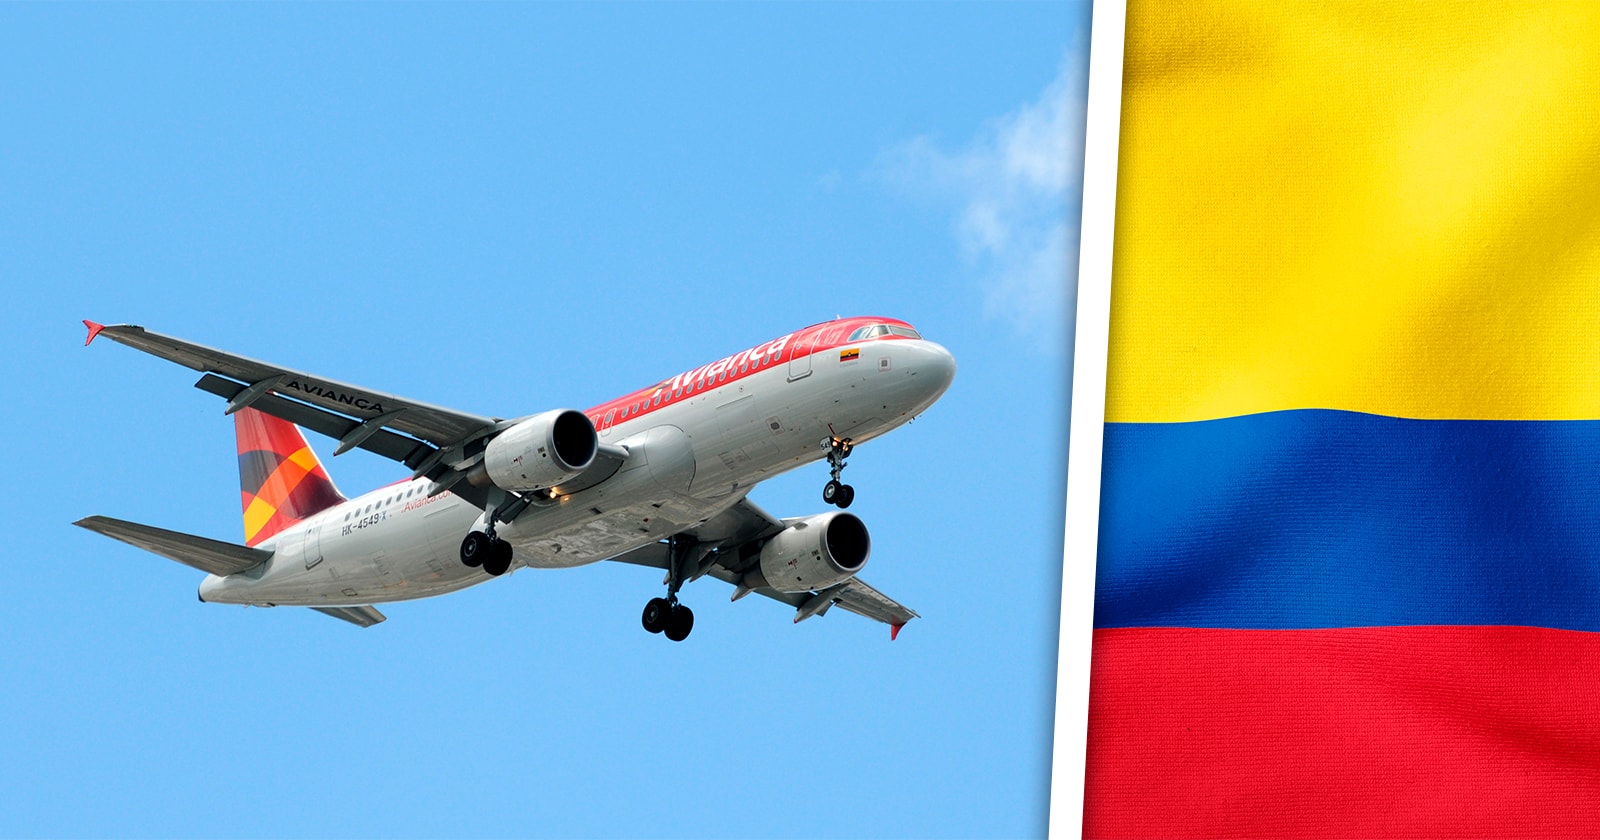 Avianca Retomará Viajes a la Habana Desde Colombia en Breve